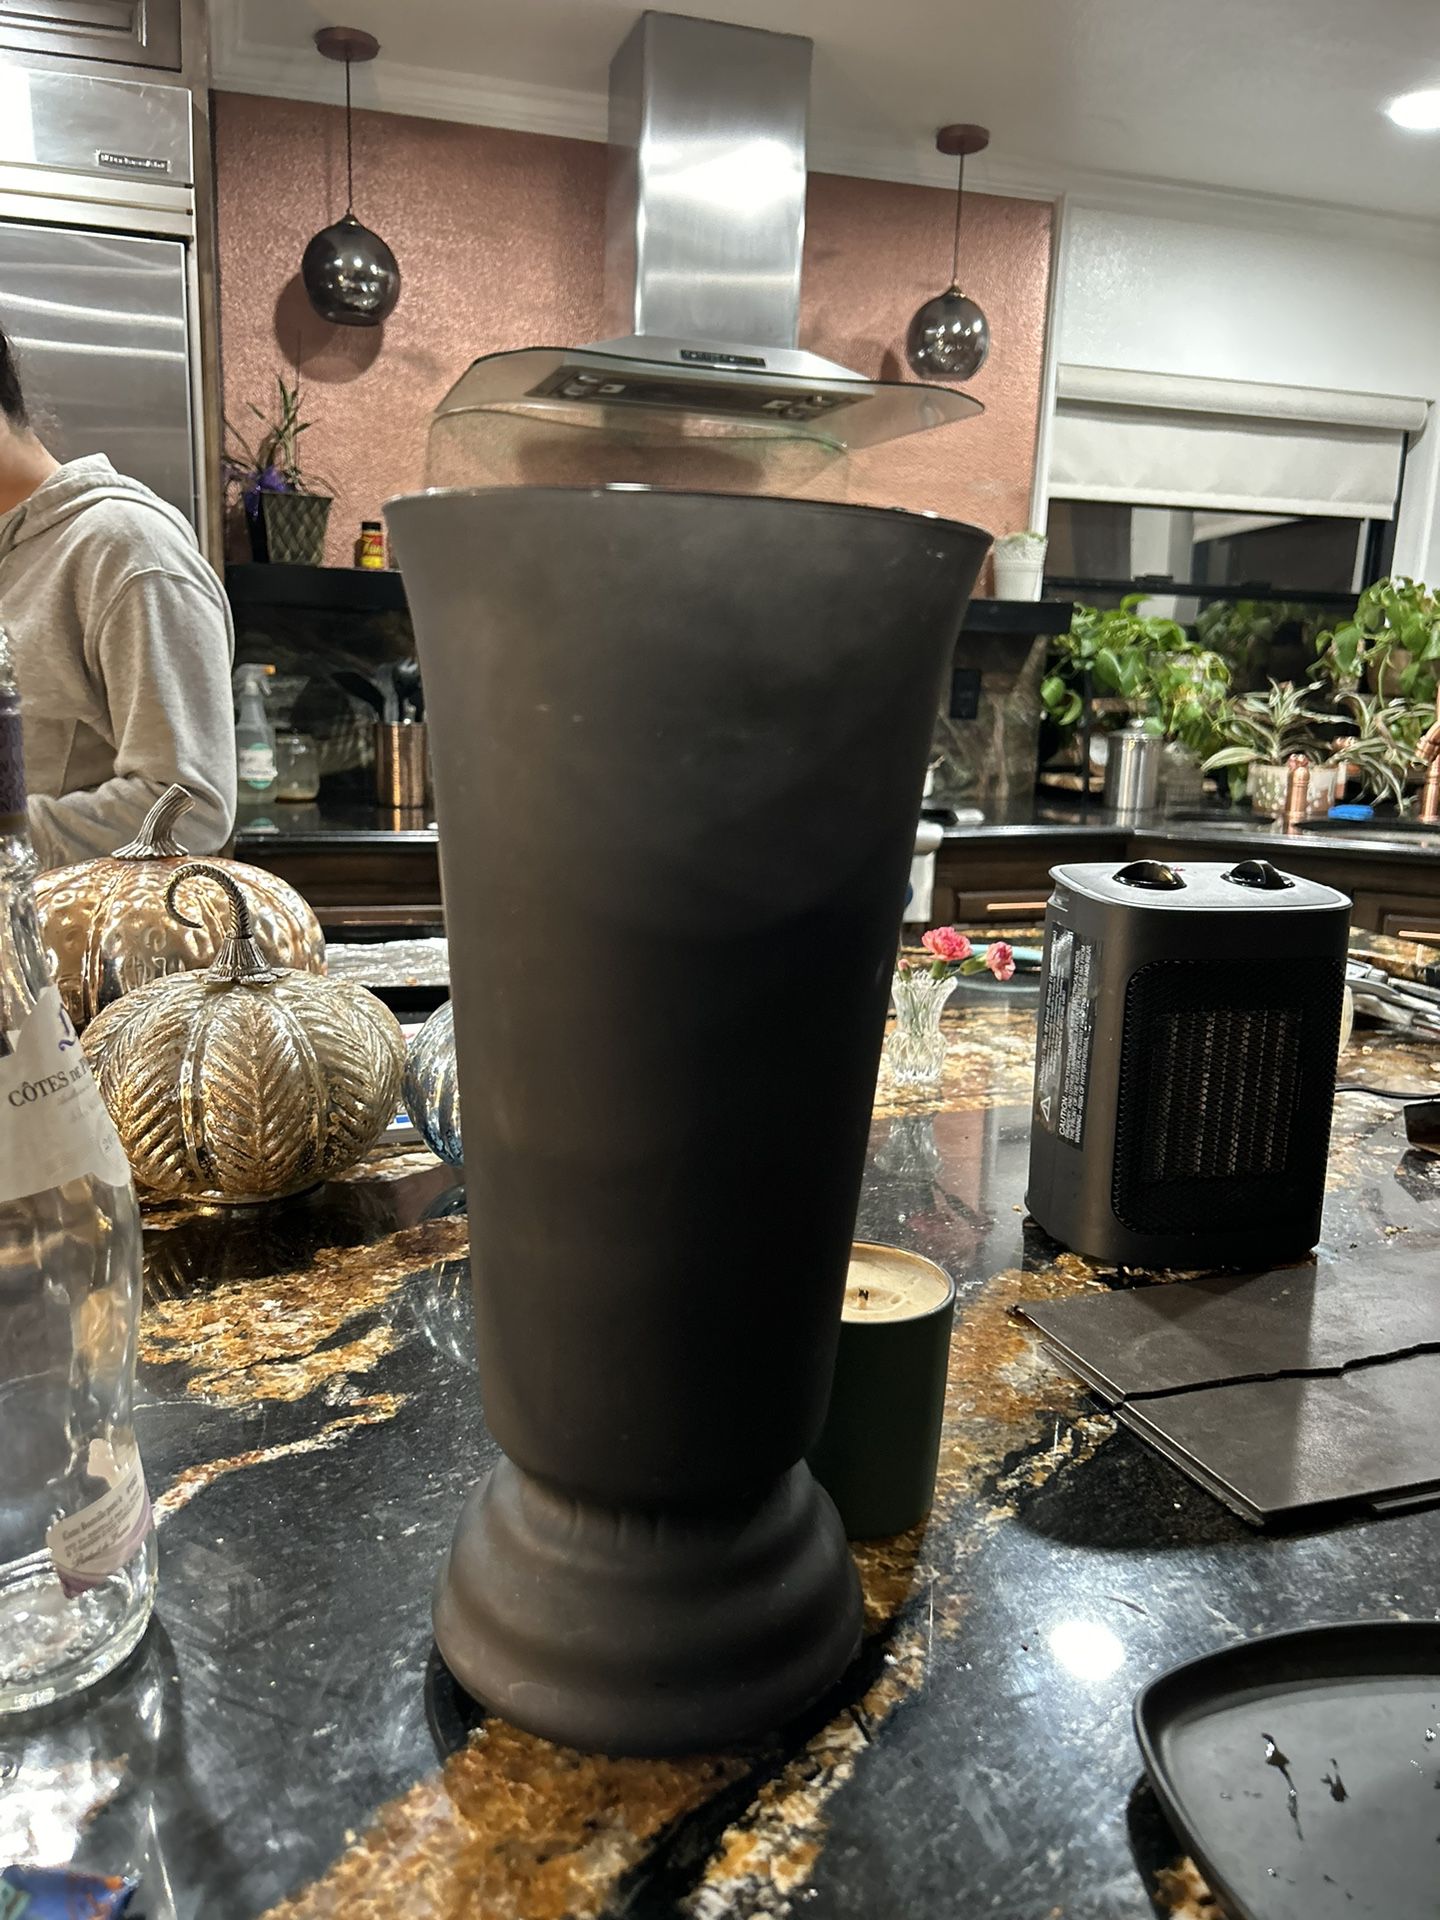 Flower Vase Black